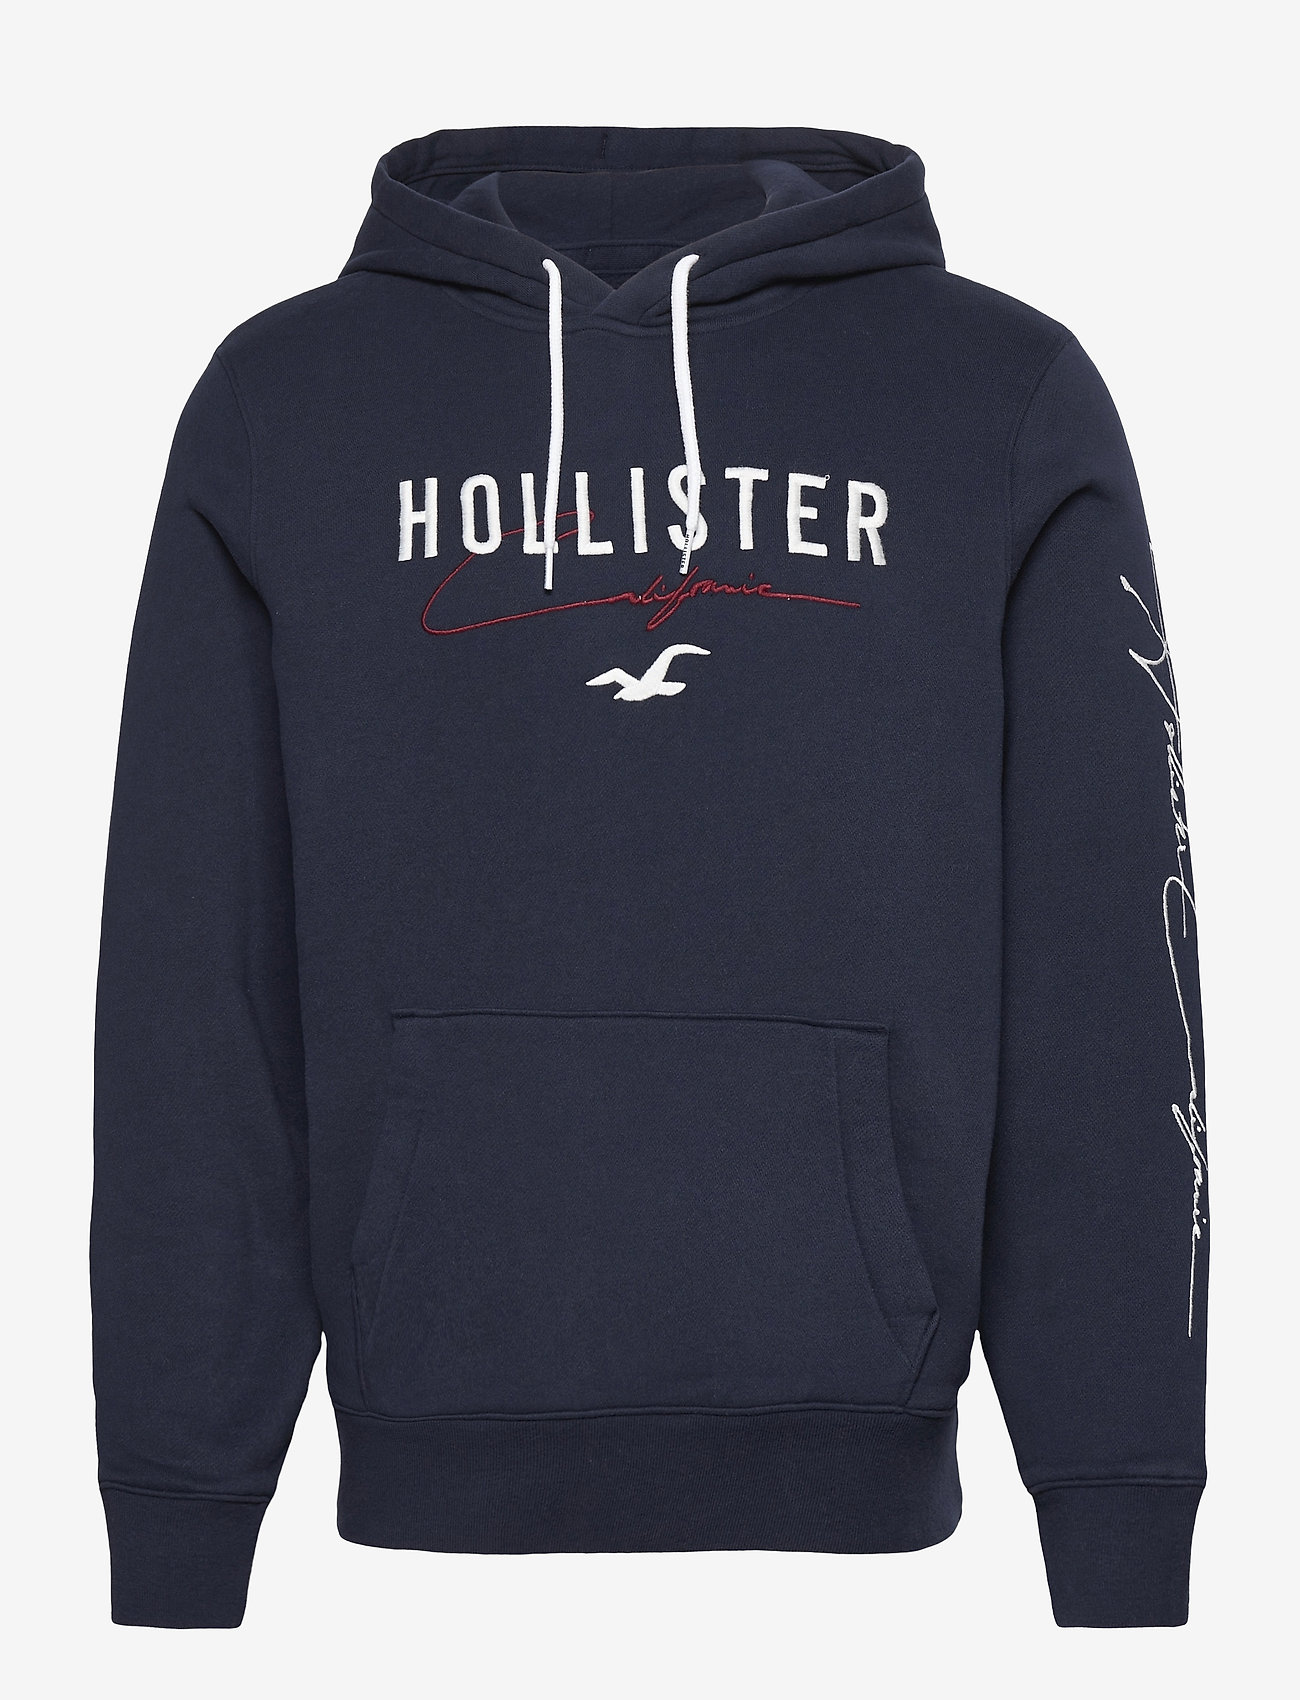 hollister gay pride hoodies